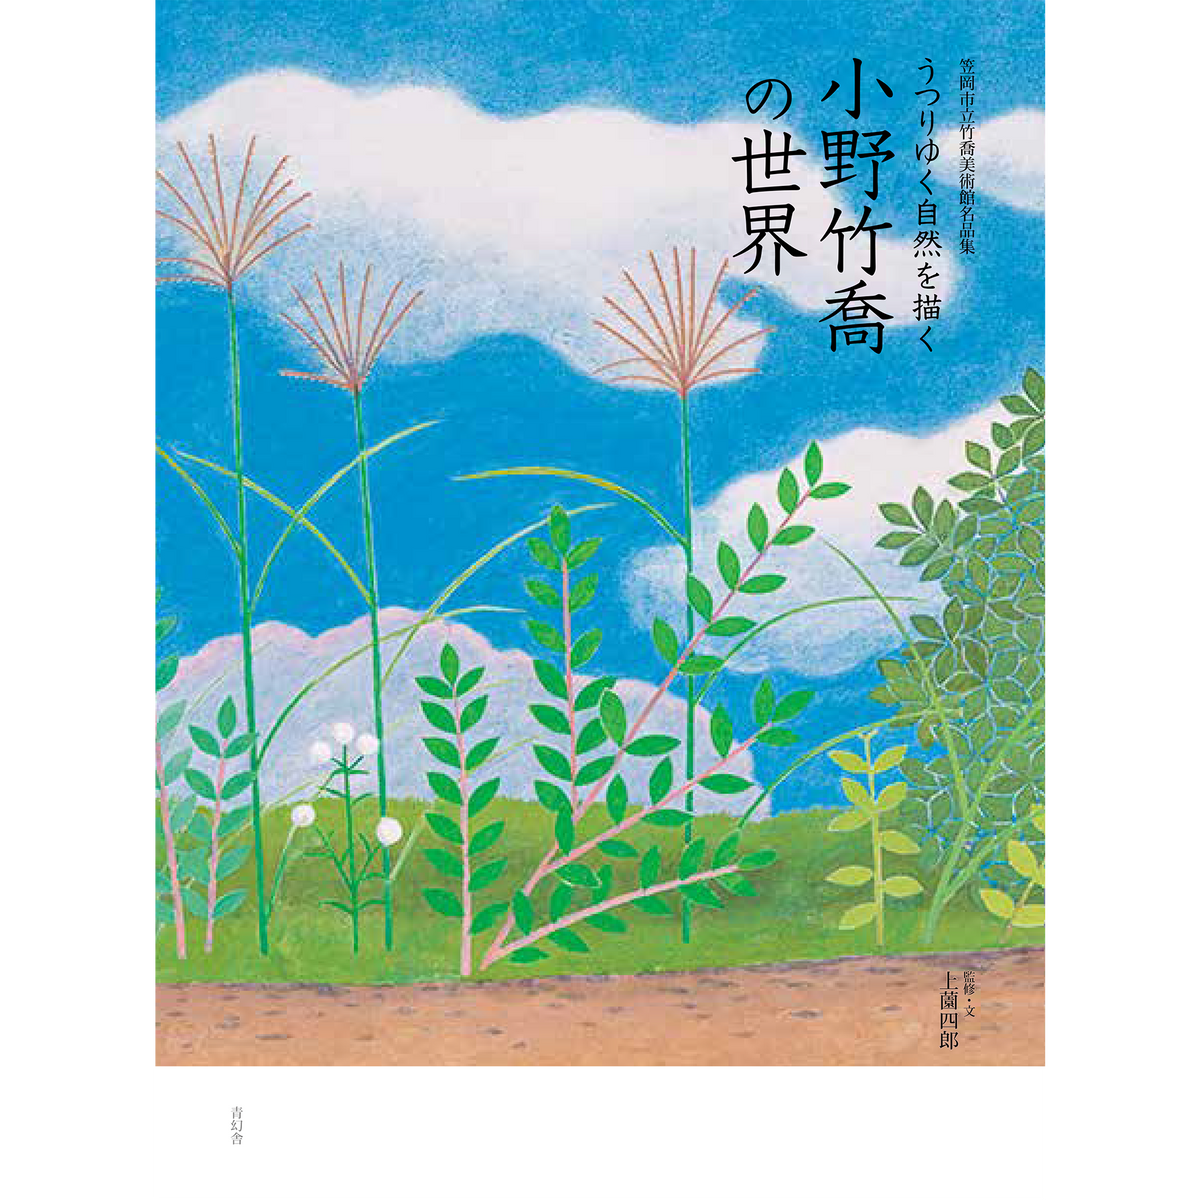 小野竹喬 【足利雛】　 高級画集画、状態良好、新品高級額装付、送料無料、日本画、絵画